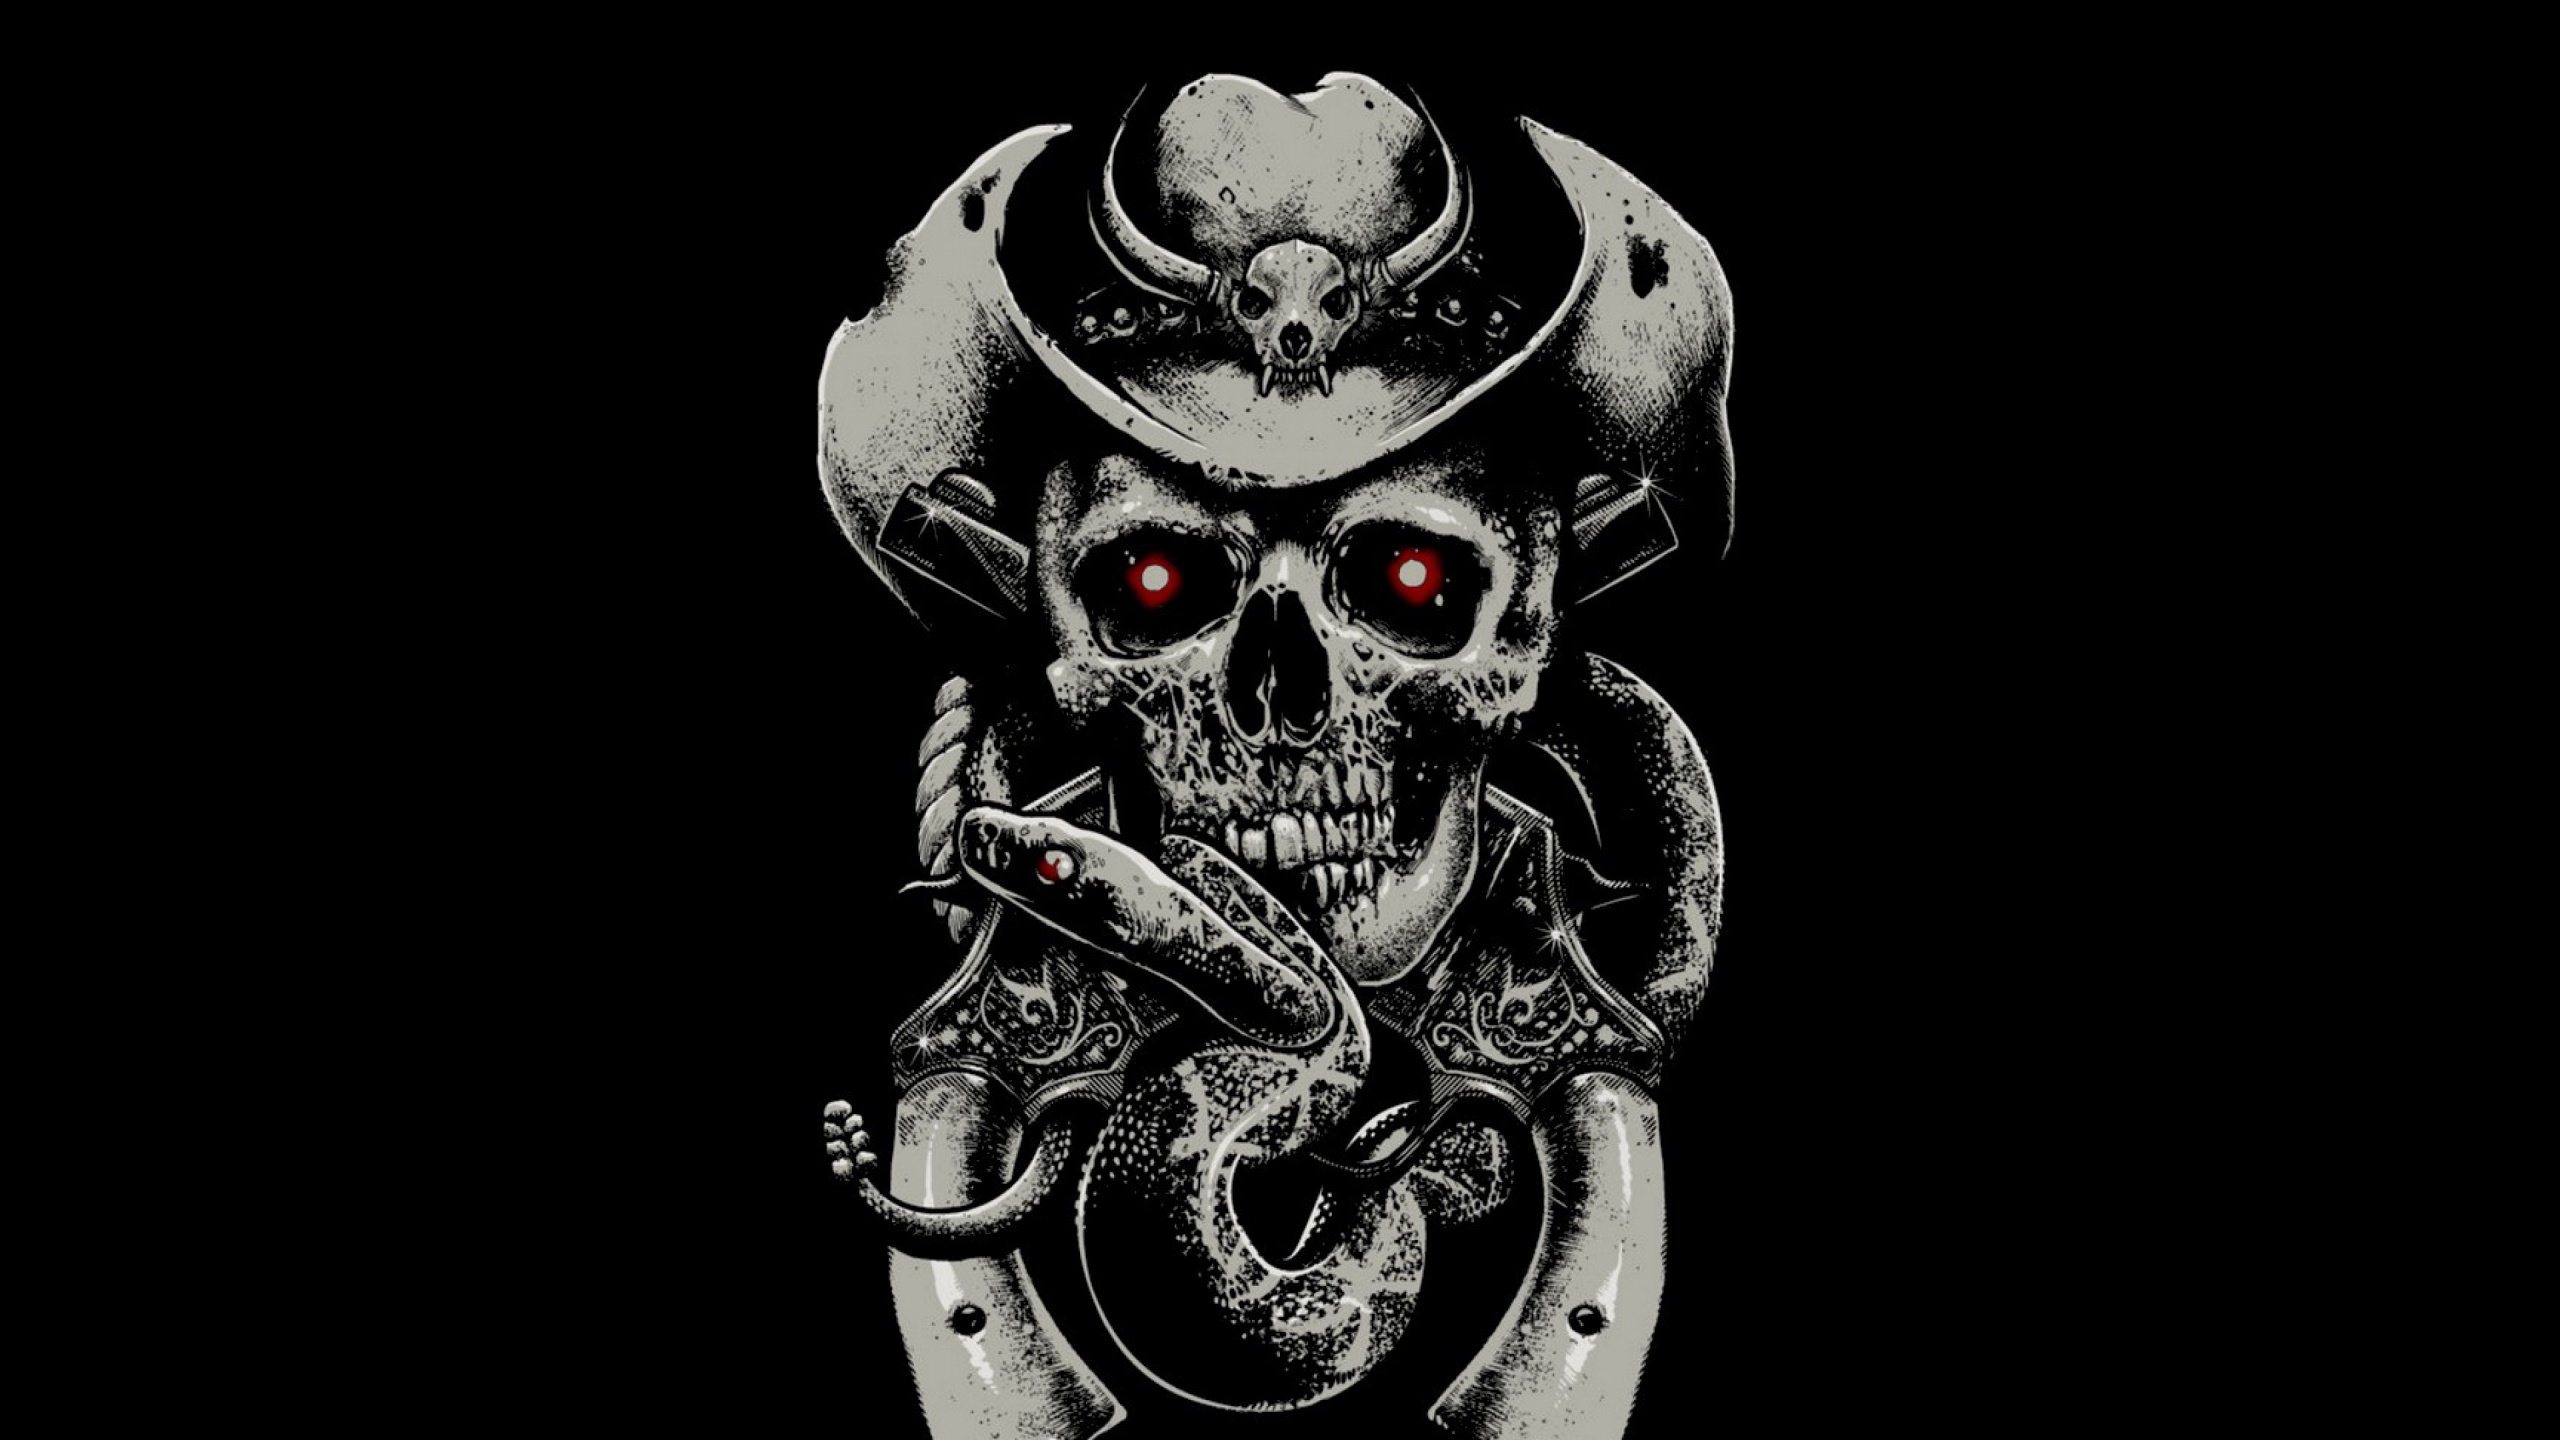 Skull, Illustration, Bone, Black and White. Wallpaper in 2560x1440 Resolution